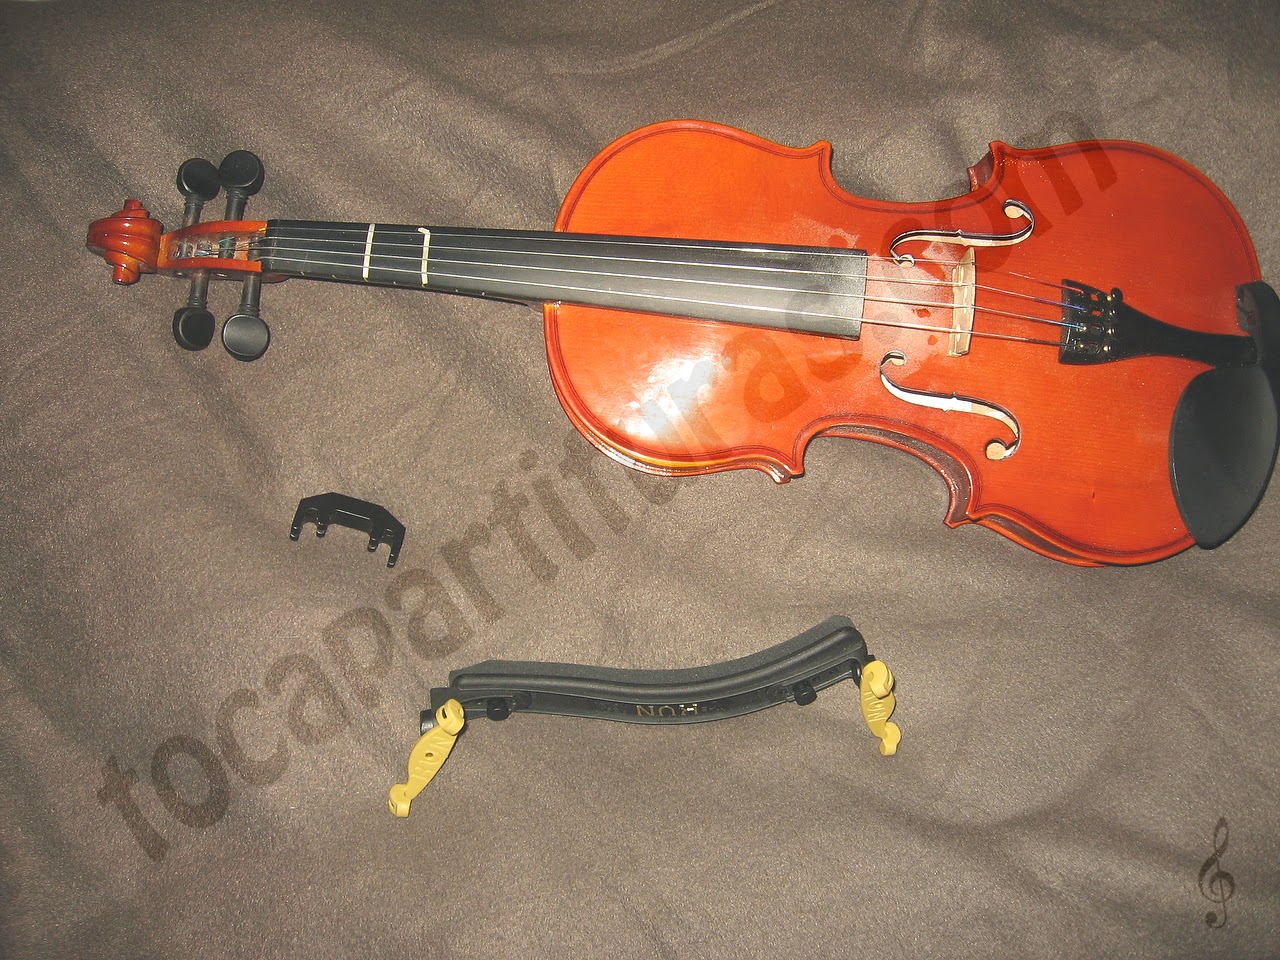 Arreglar el clavijero de un violín de forma casera o marcar los trastes en un violín de forma manual, al estilo de guitarra